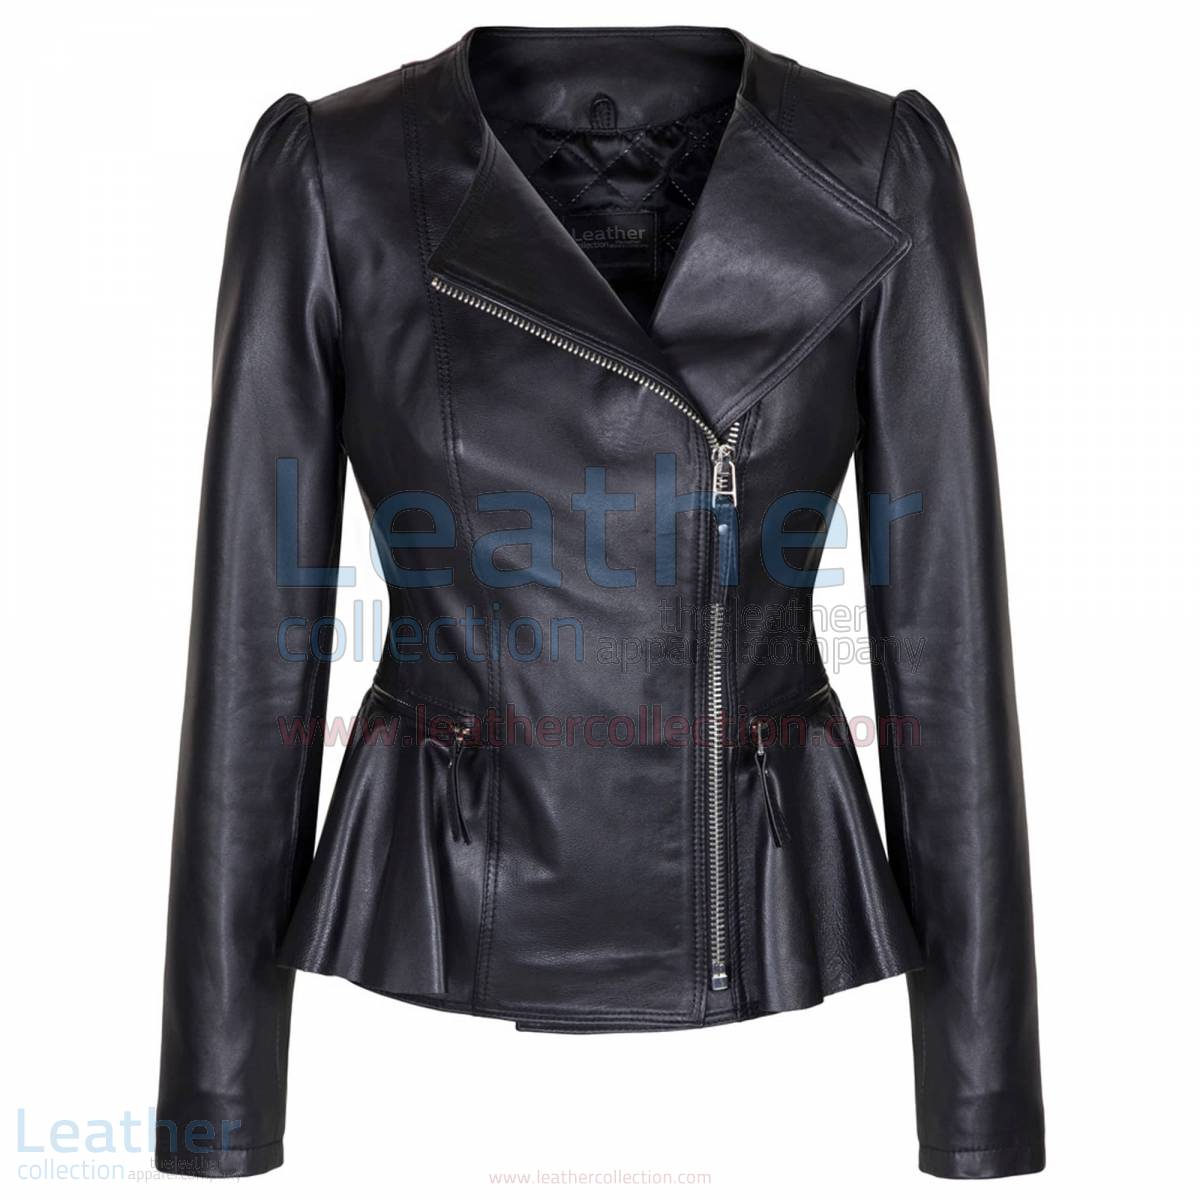 icon leather jacket